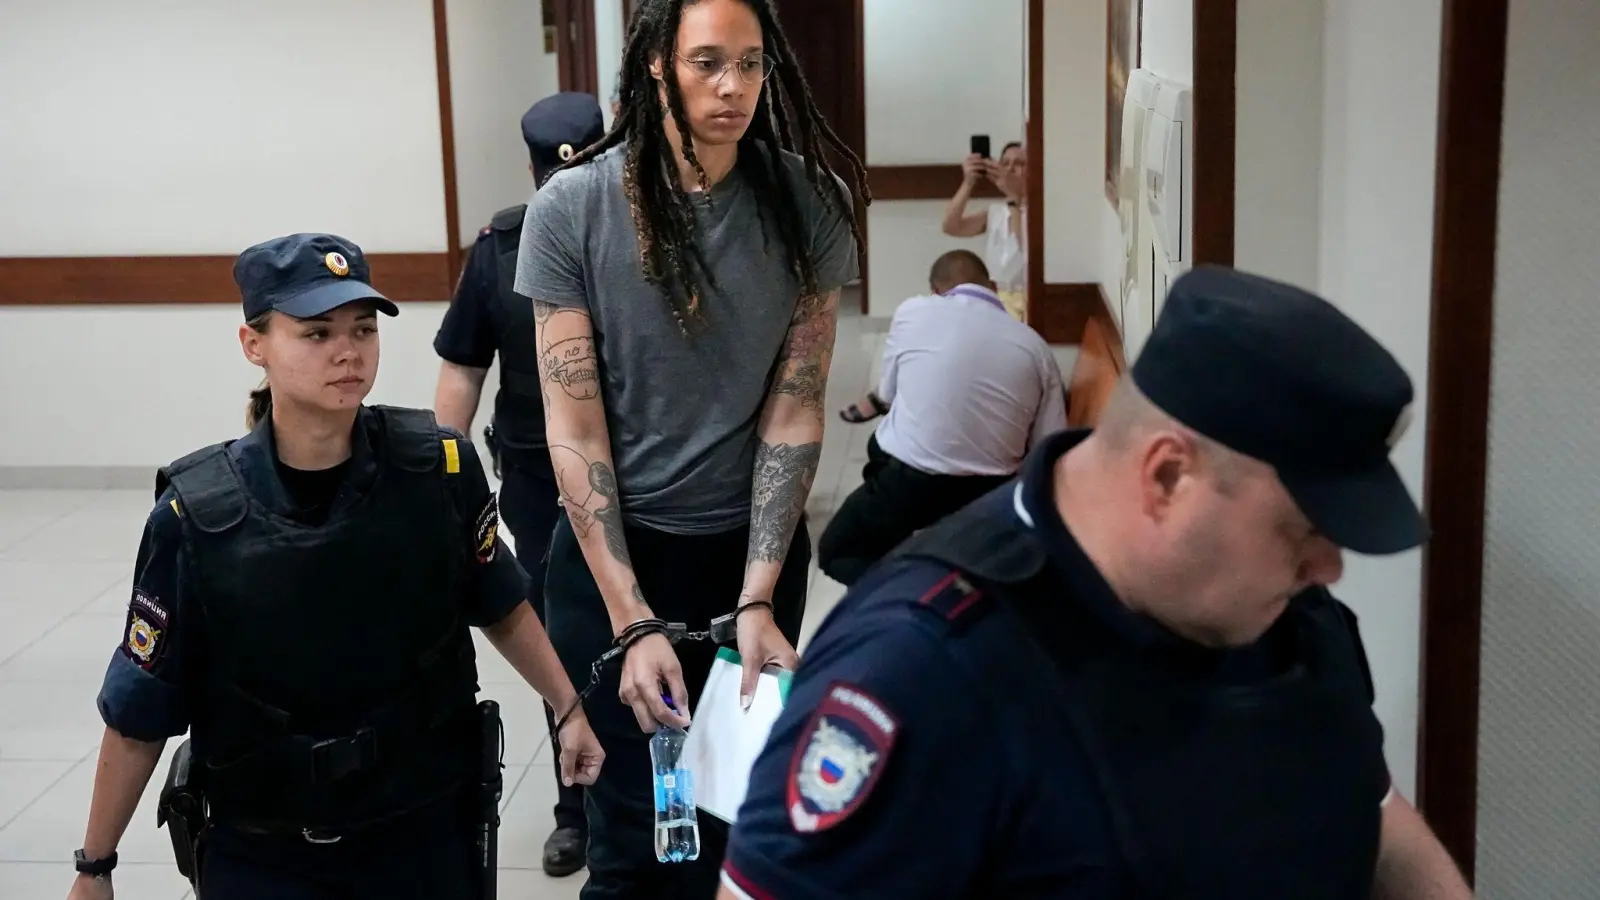 Basketballerin Brittney Griner (M) wurde in Russland zu neun Jahren Haft verurteilt. (Foto: Alexander Zemlianichenko/AP/dpa)